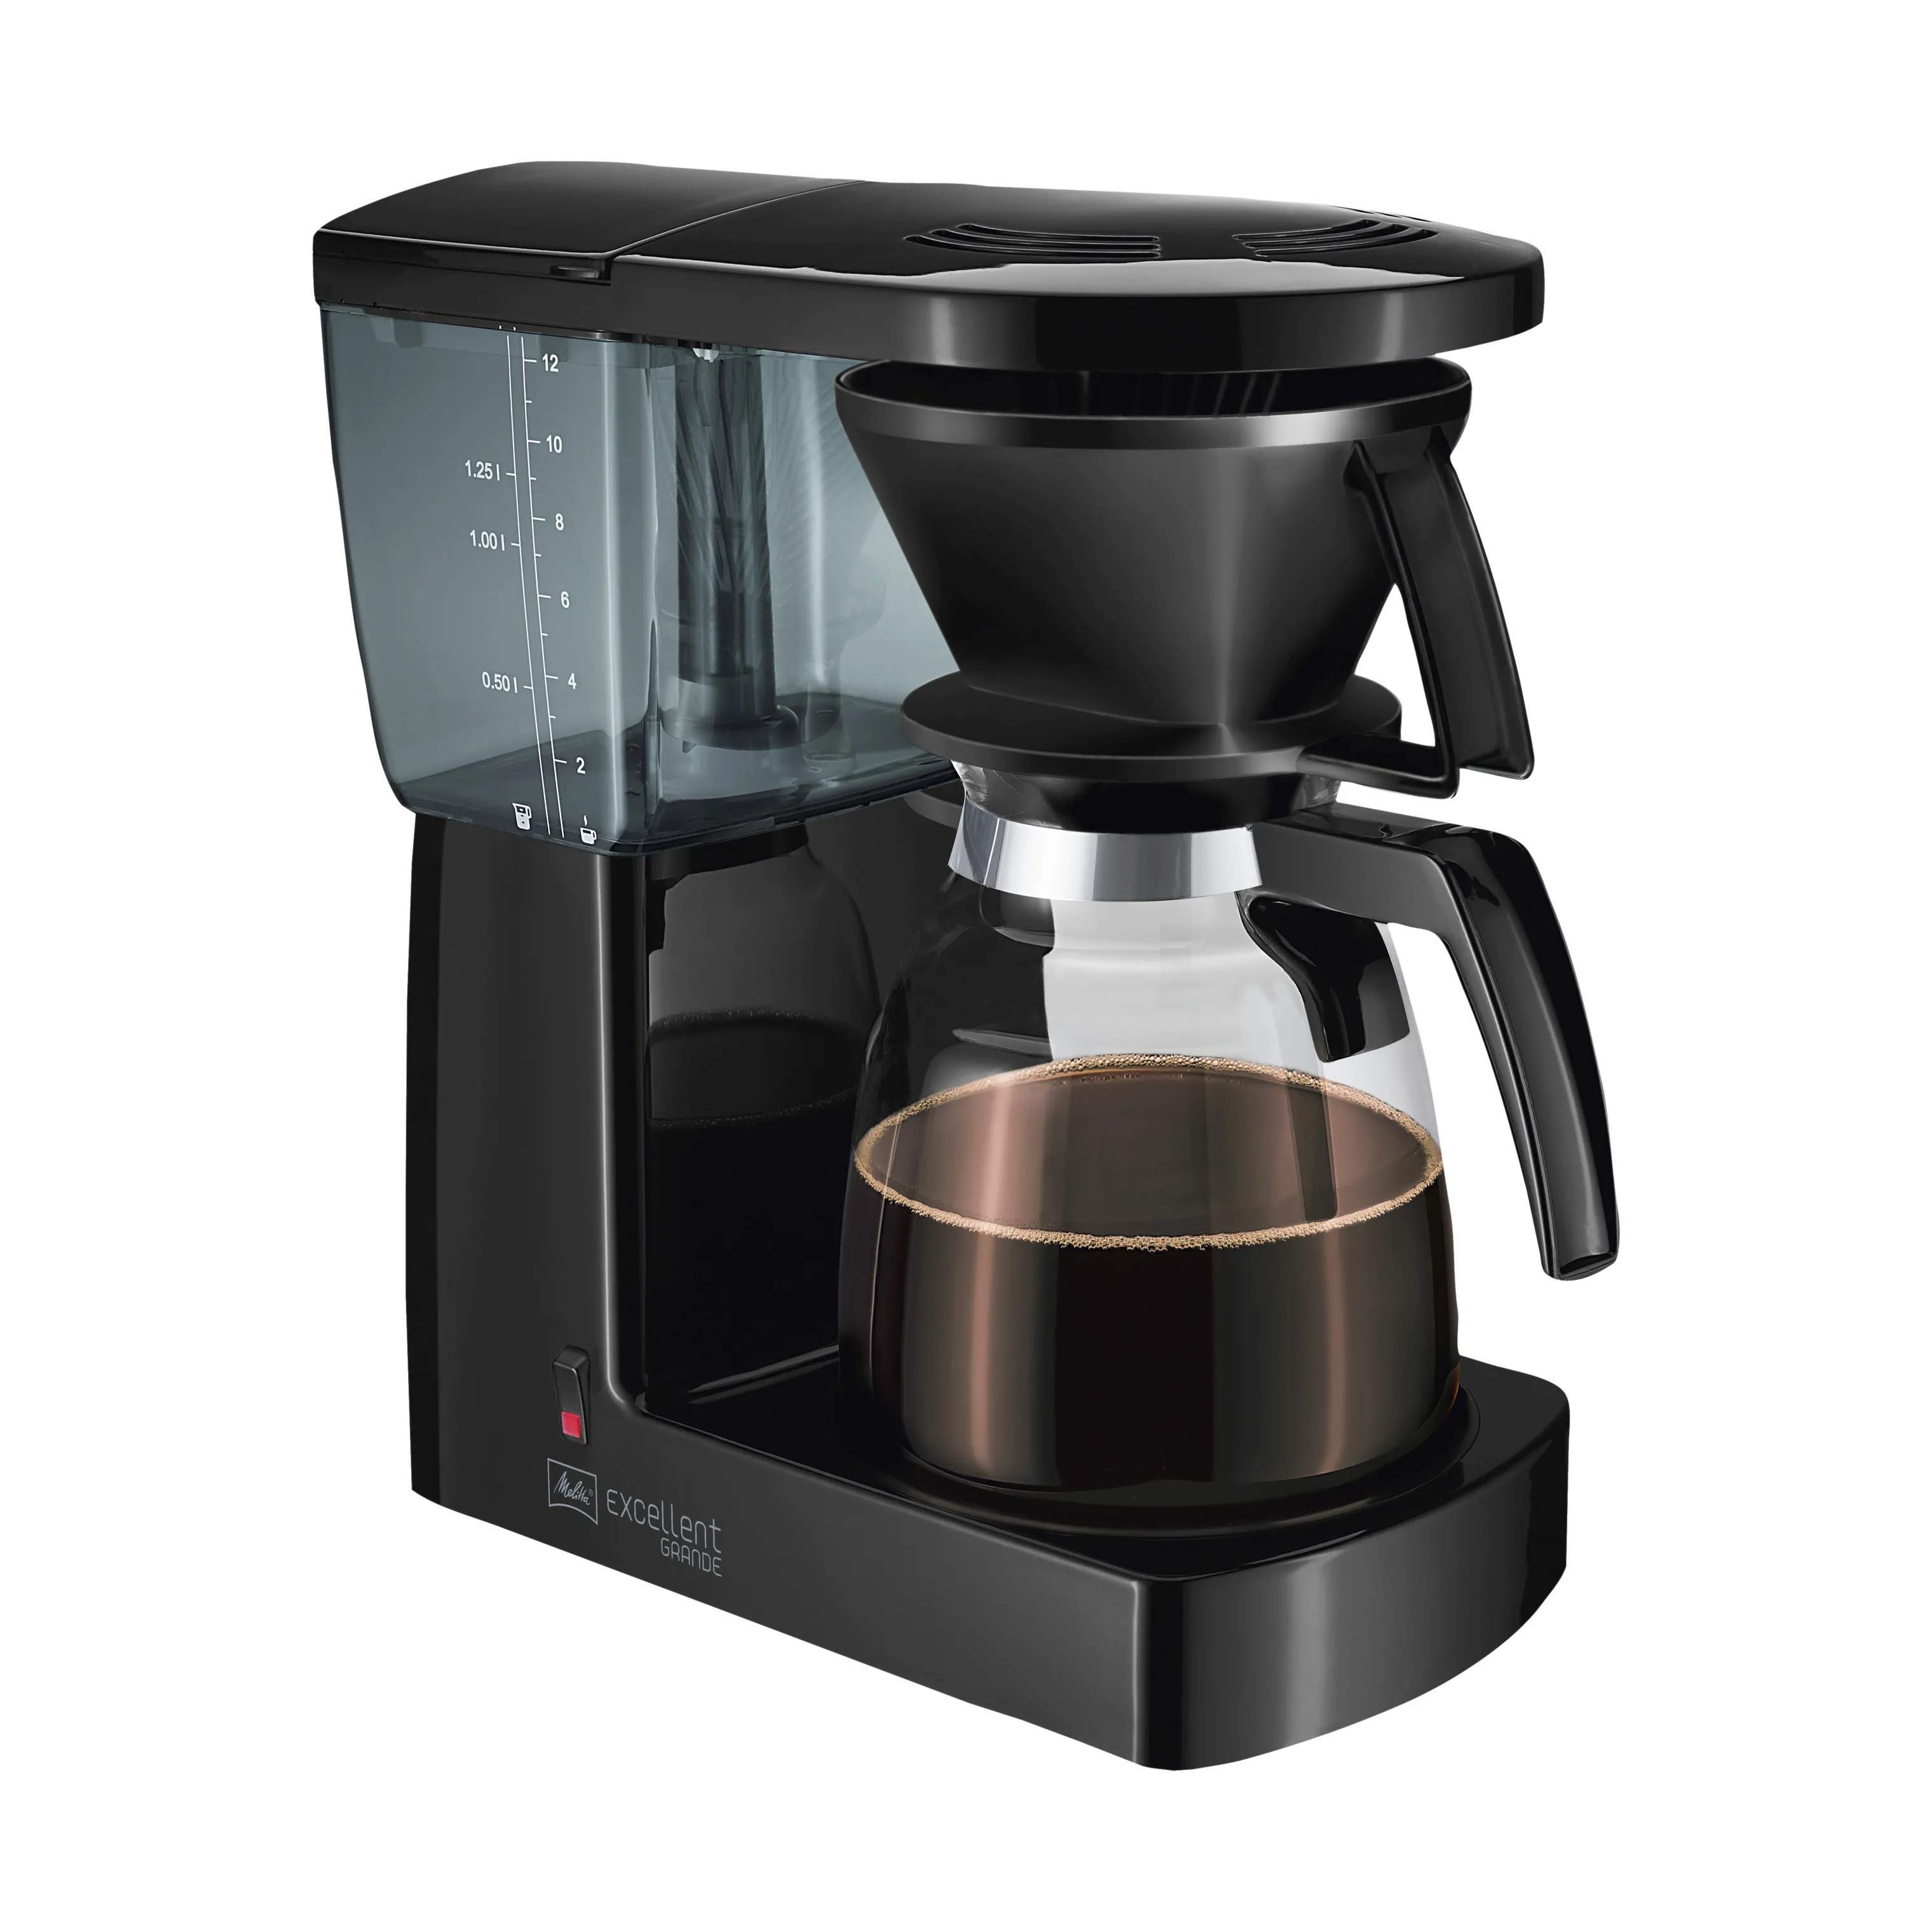 Excellent Grande Kaffemaskine 3.0, sort, large